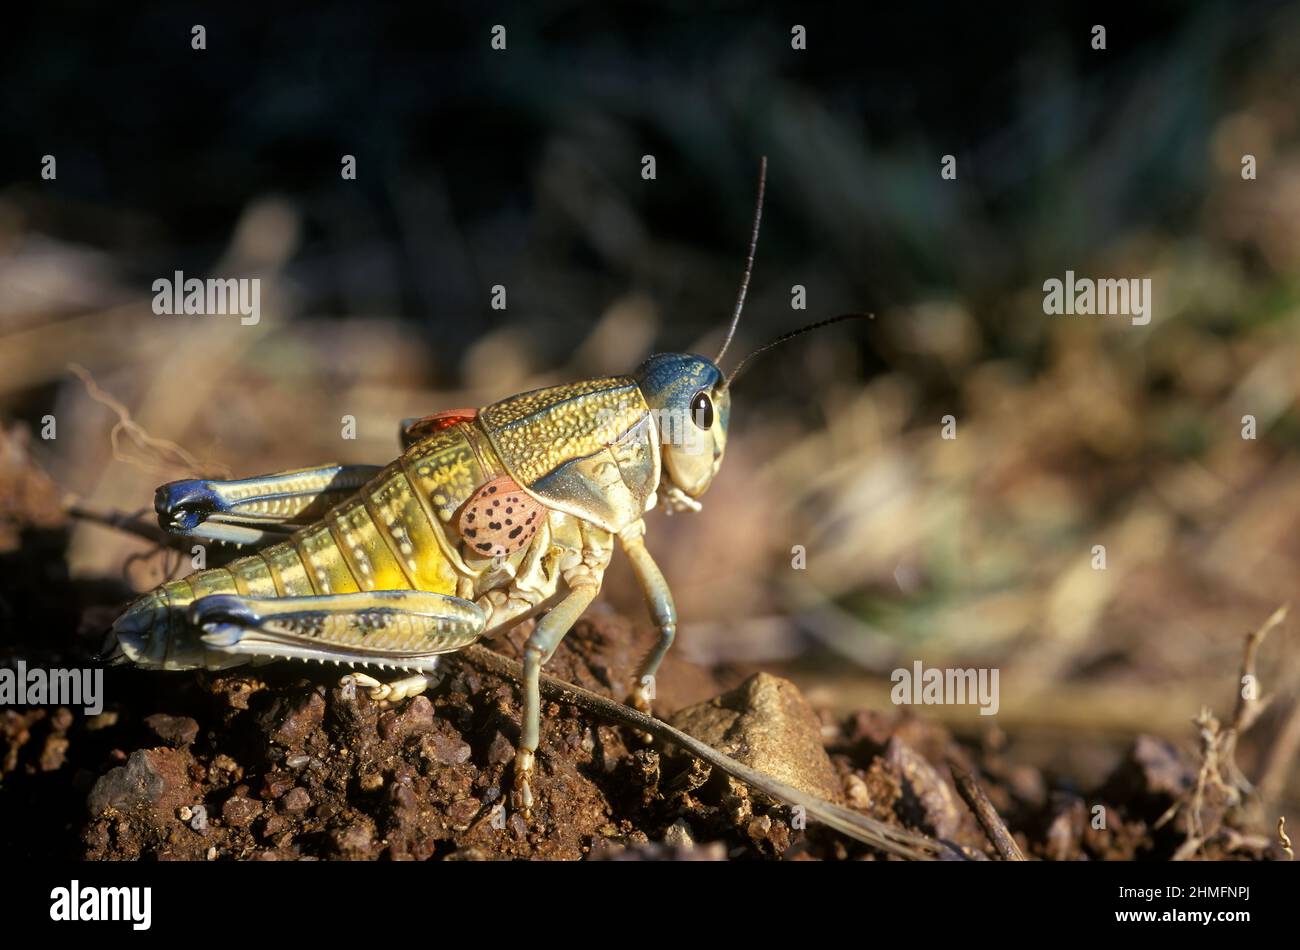 Plains lubber grasshopper (Brachystola magna, Romaleidae), Southern Arizona Stock Photo